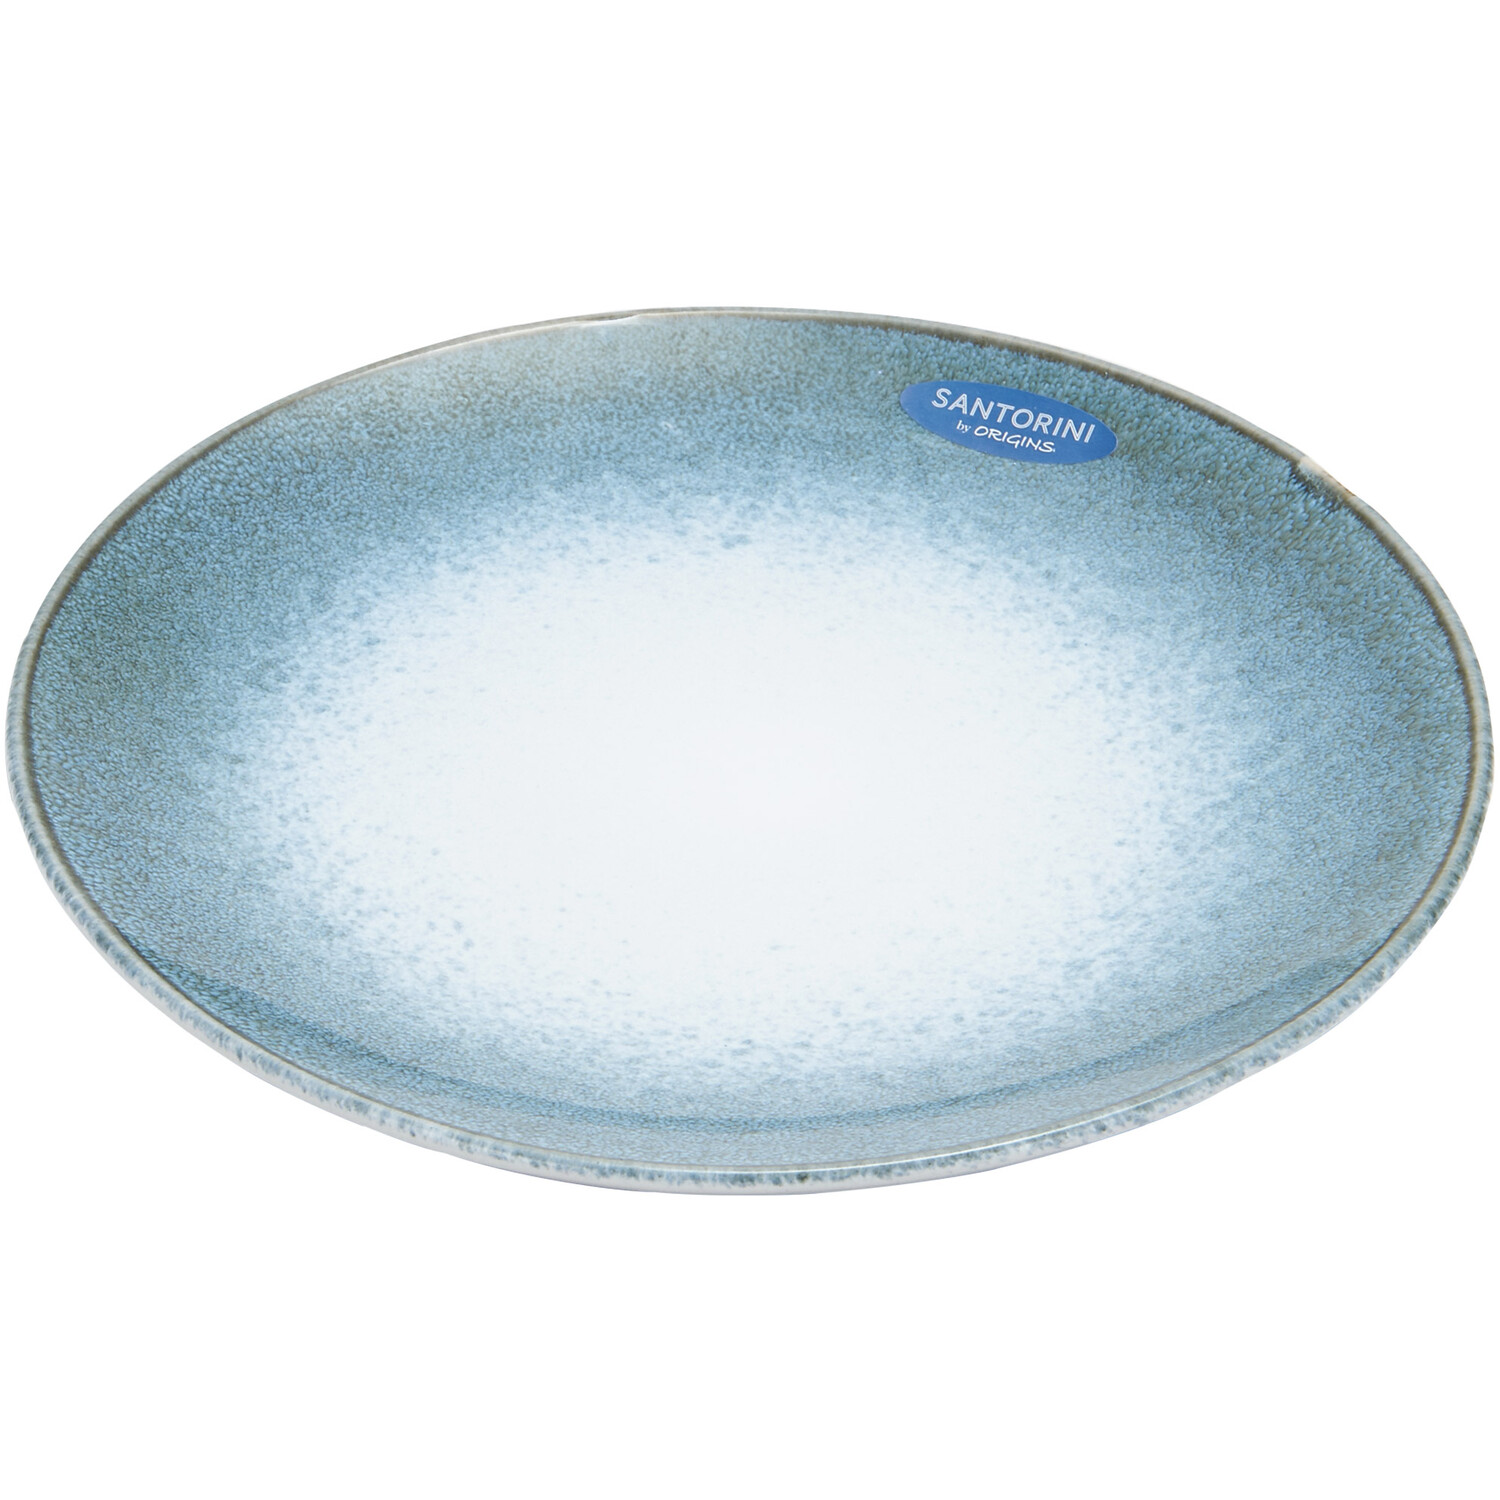 12-Piece Santorini Reactive Glaze Dinner Set - Blue Image 4